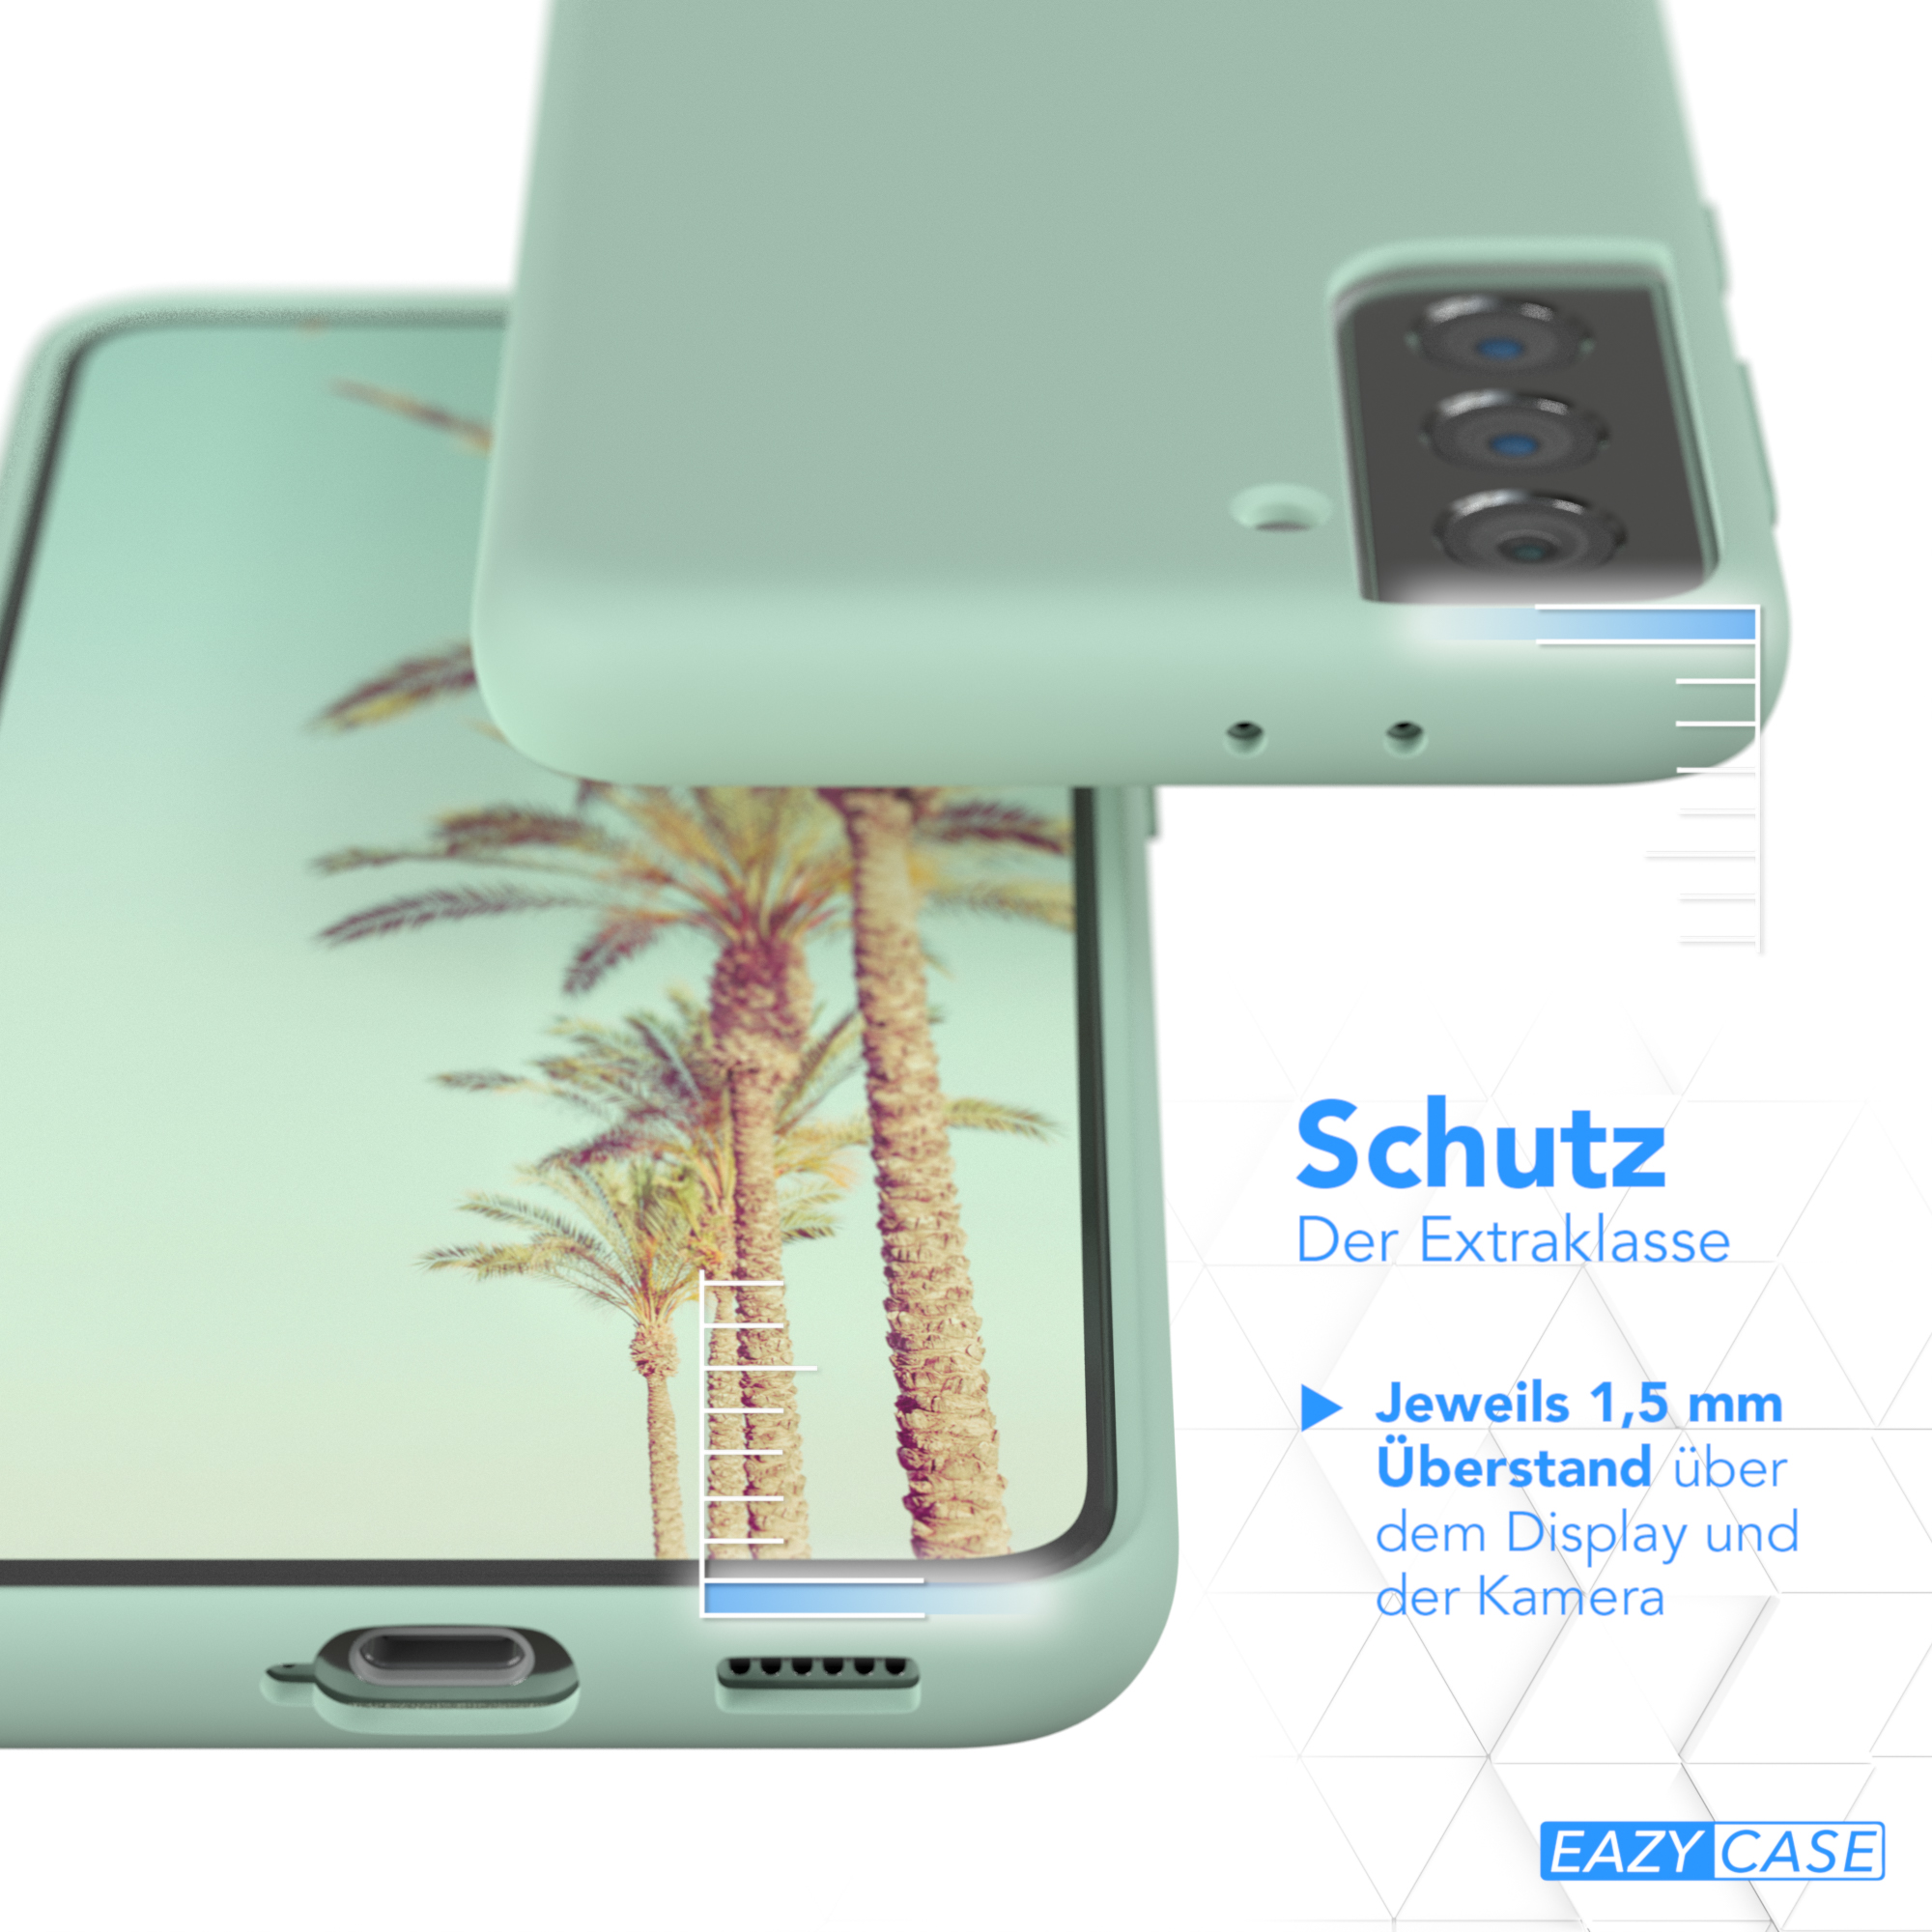 EAZY CASE Premium Handycase, Silikon S21 Grün Samsung, Backcover, Galaxy 5G, Mint